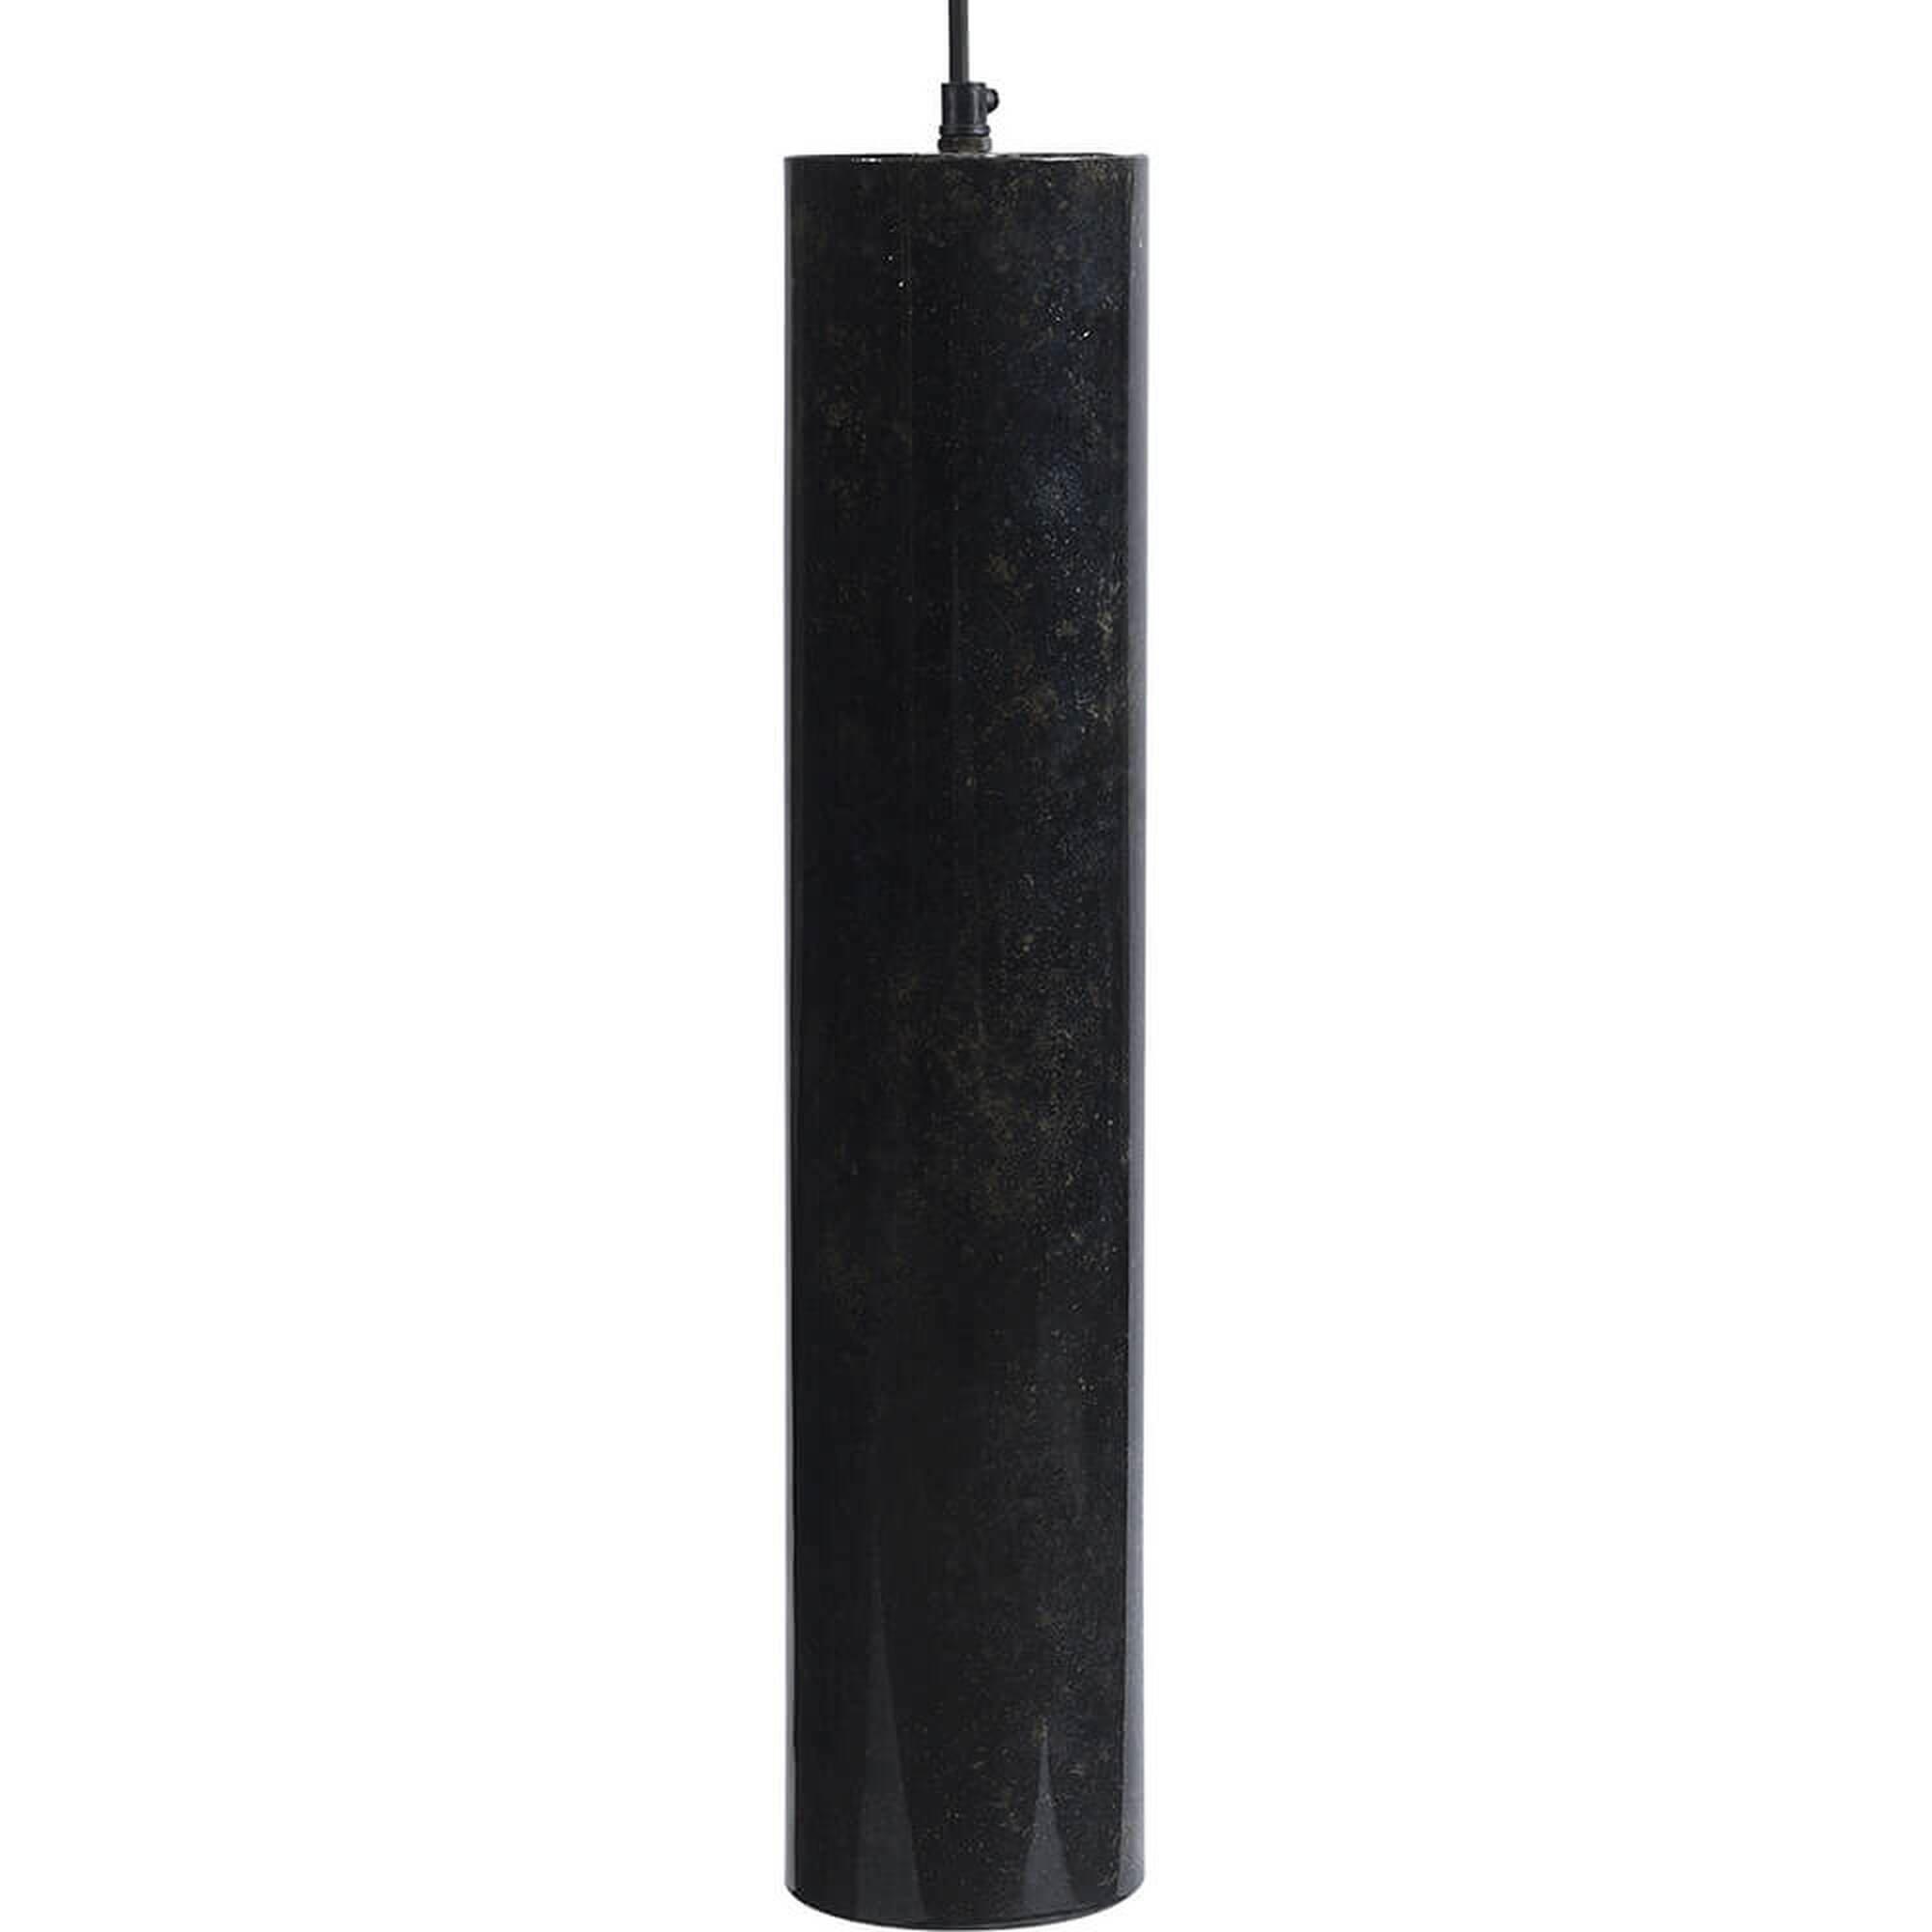  Jonah cylinderformet lampe L - mørkeblå marmoreret fra Trademark Living i Jern (Varenr: M08373)